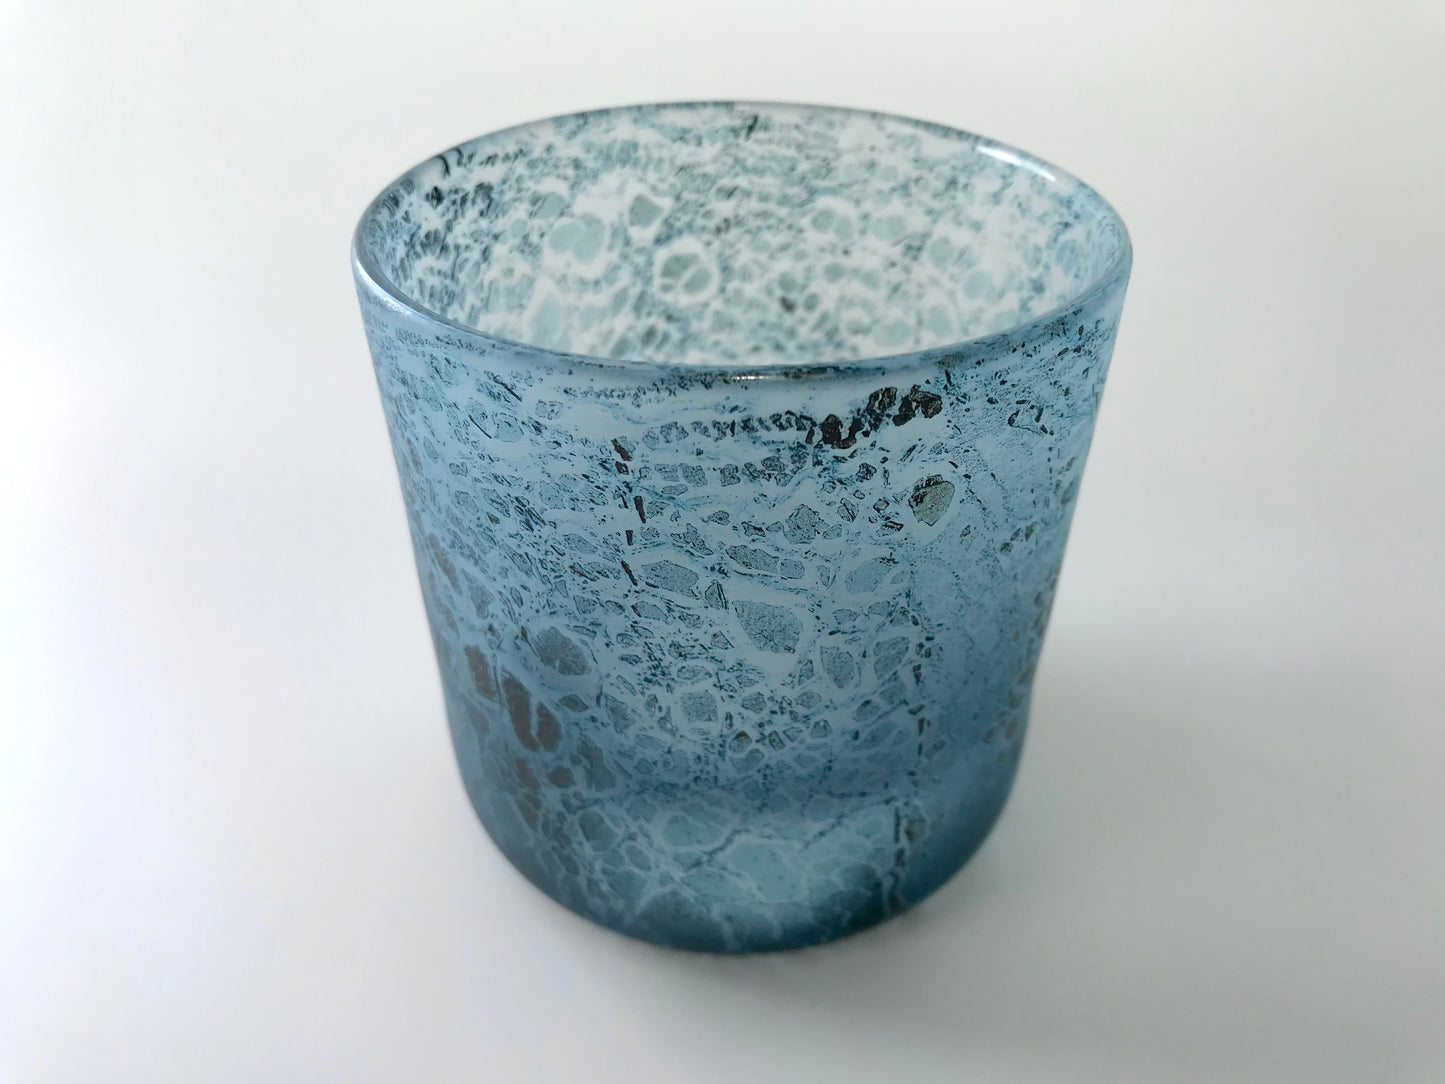 Copper Foil Rocks Glass Glass Artists by Kojima Glass #GW-3